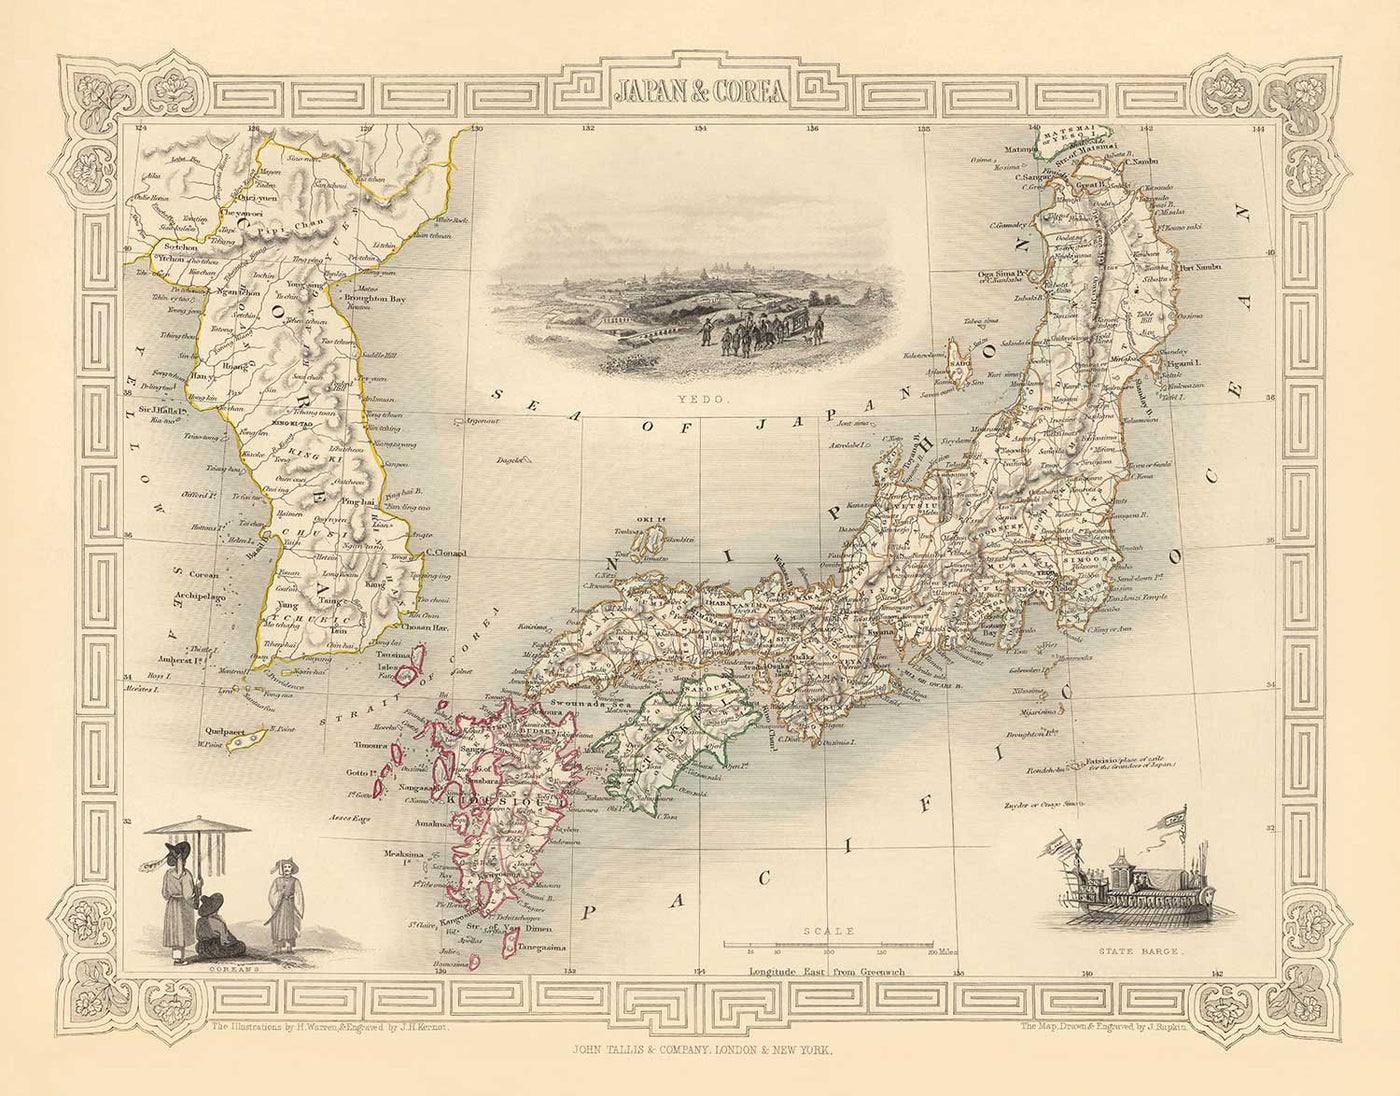 Ancienne carte du Japon et de la Corée, 1851 par Tallis et Rapkin - Kyushu, Honshu, Shikoku, Hokkaido, Tokyo, Séoul